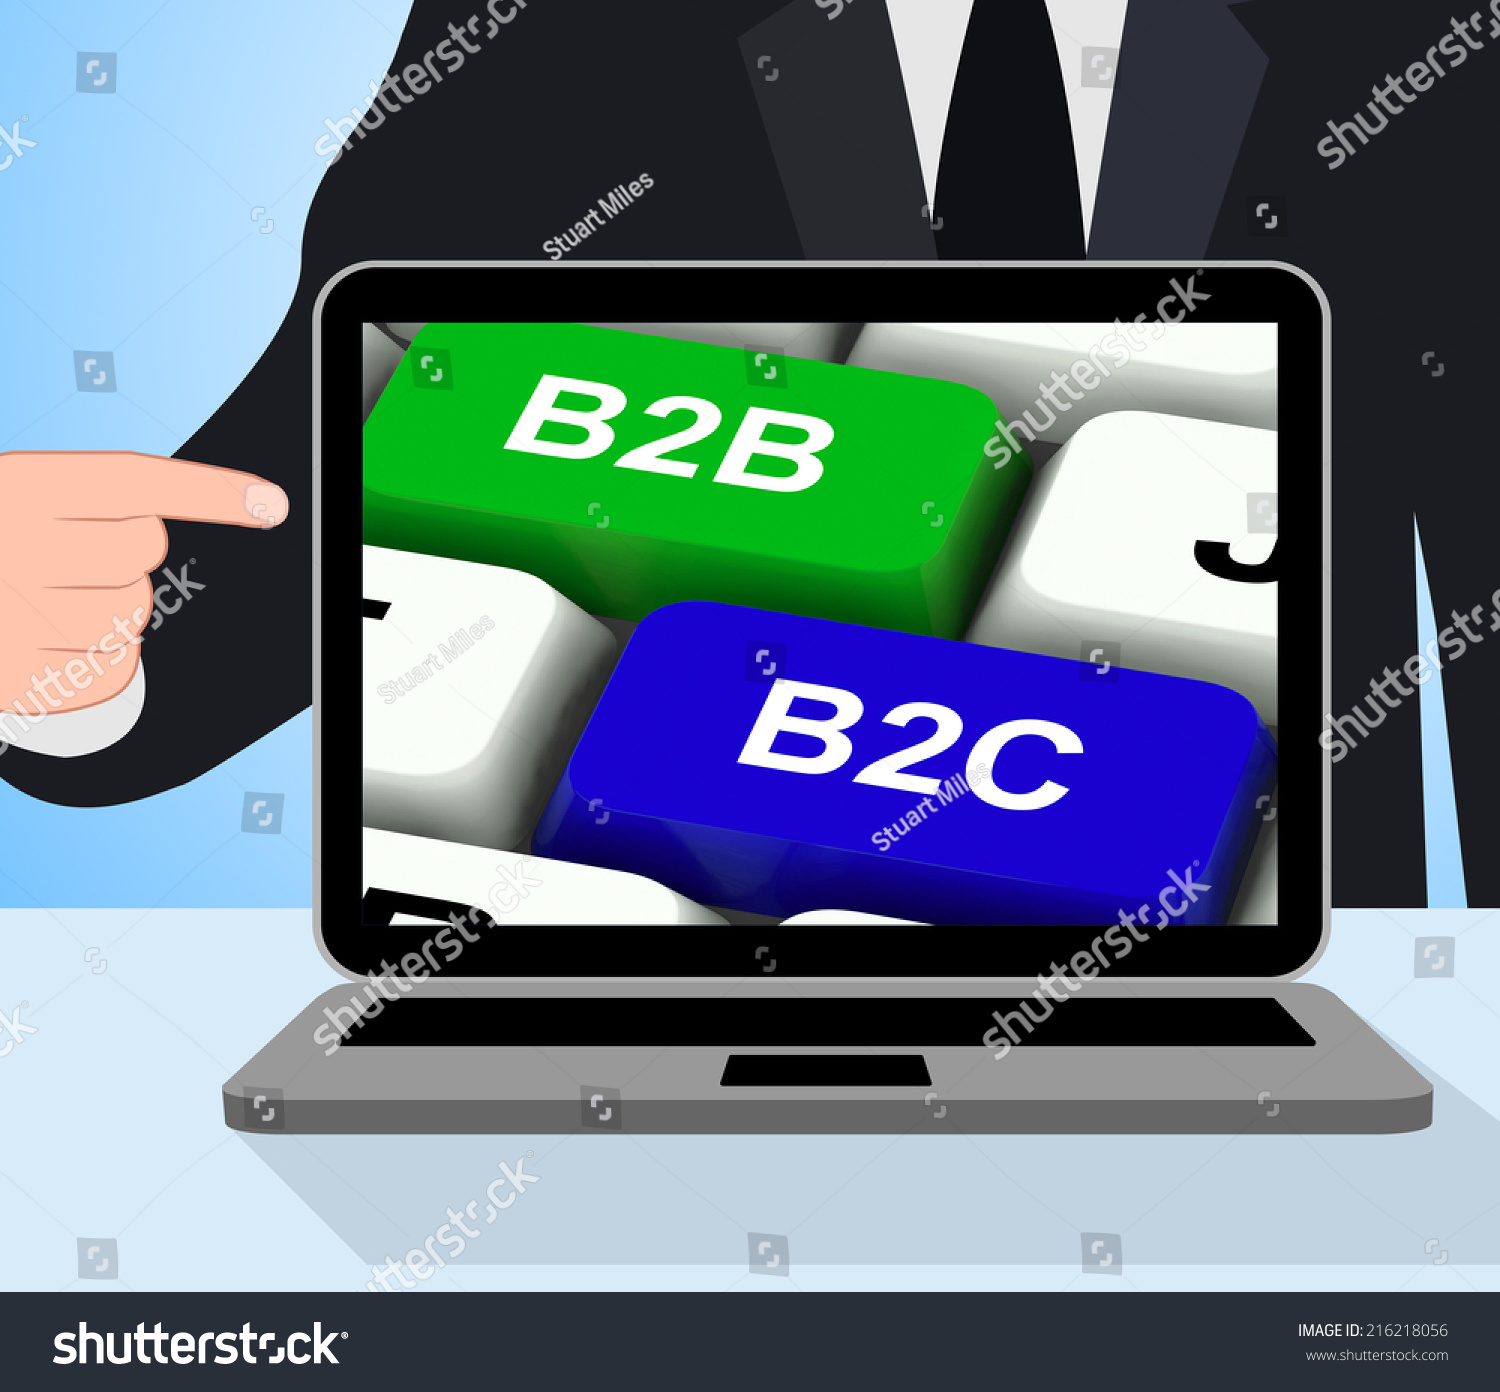 B2b B2c Keys Displaying Business Partnerships Stock Illustration ...